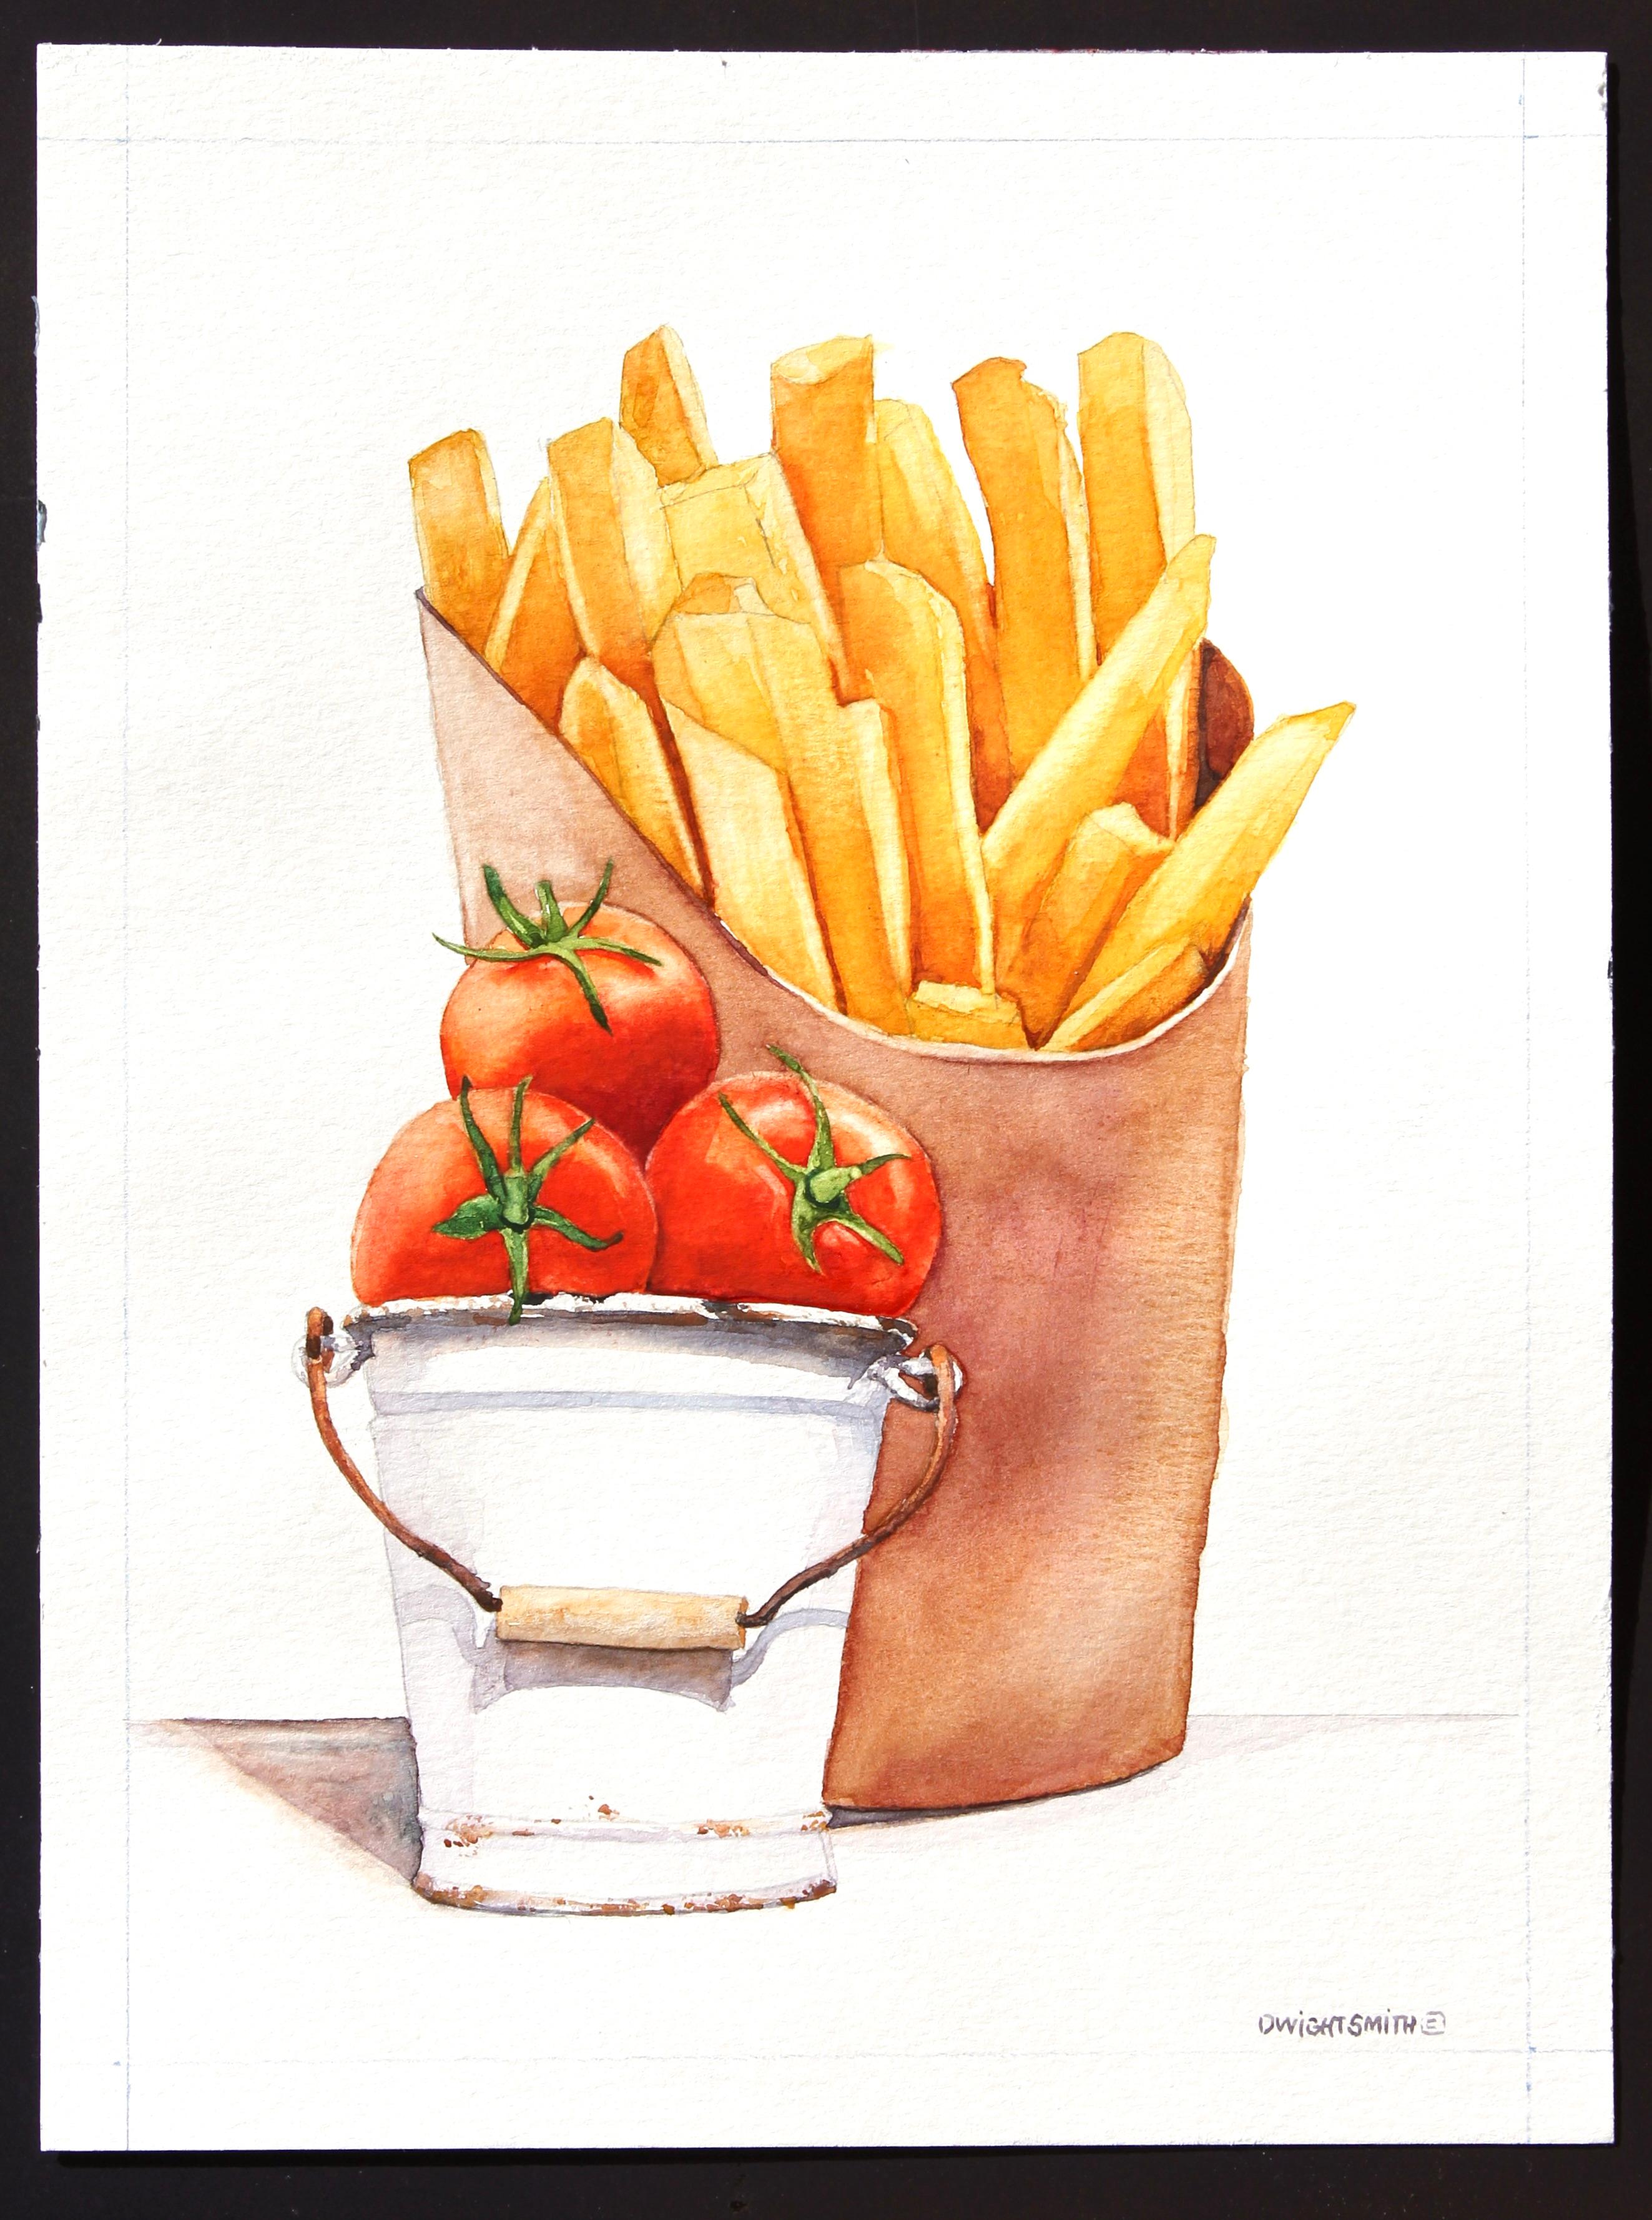 Mit einer Seite des Ketchup, Originalgemälde (Amerikanischer Realismus), Art, von Dwight Smith